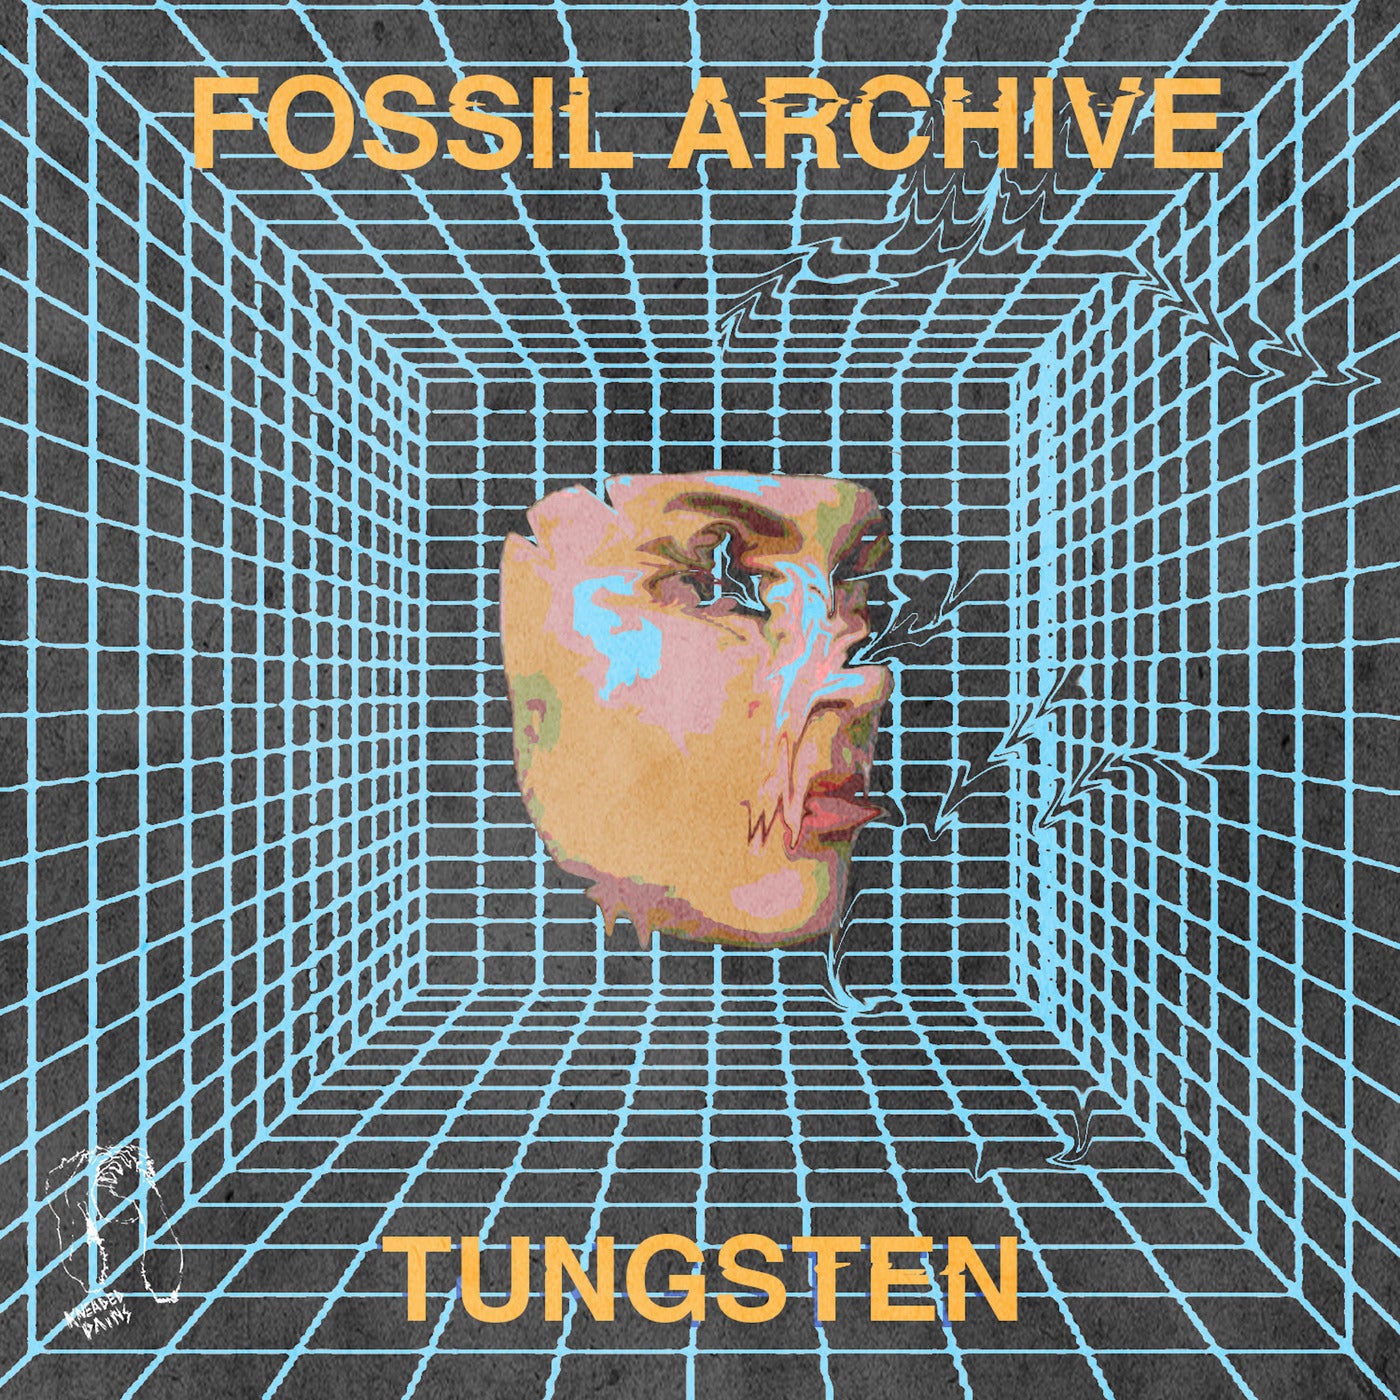 image cover: Roberto, Fossil Archive - Tungsten / KPLP10